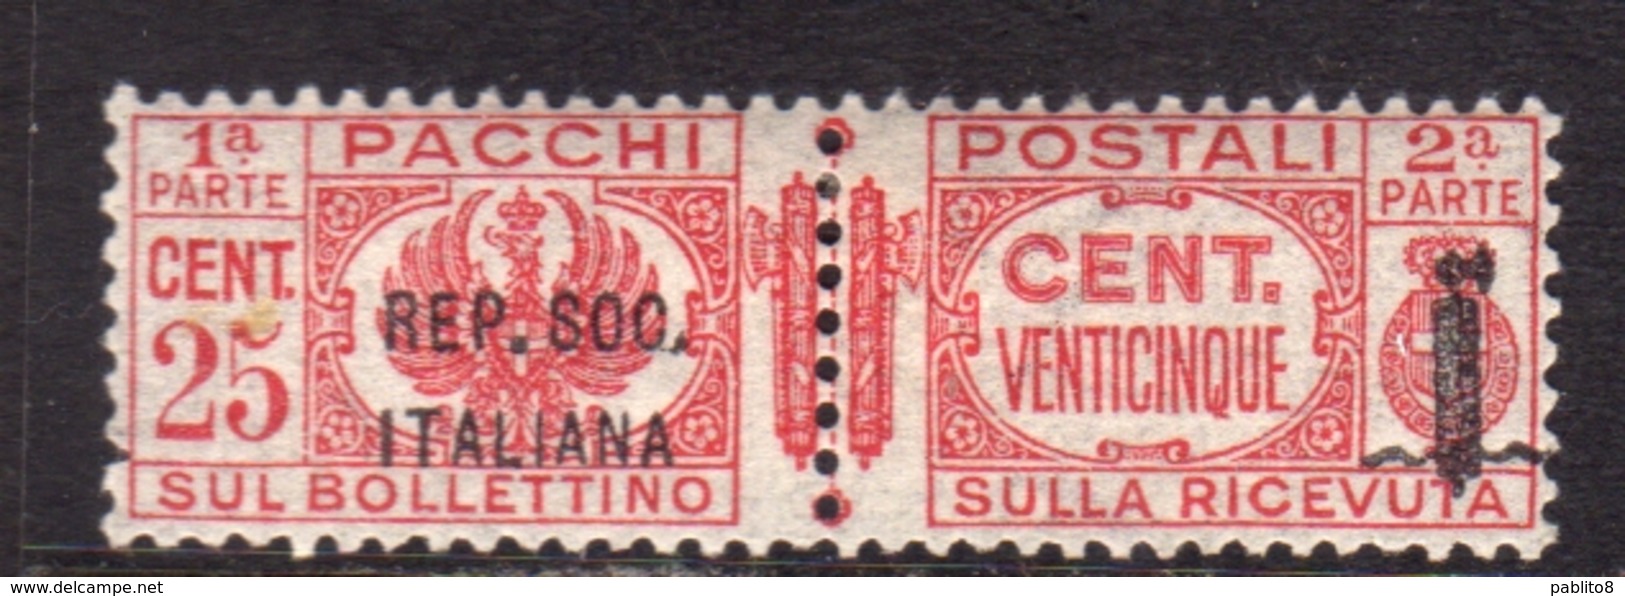 ITALIA REGNO ITALY KINGDOM 1944 RSI REPUBBLICA SOCIALE ITALIANA PACCHI POSTALI PARCEL POST FASCIO CENT. 25c MNH - Postal Parcels